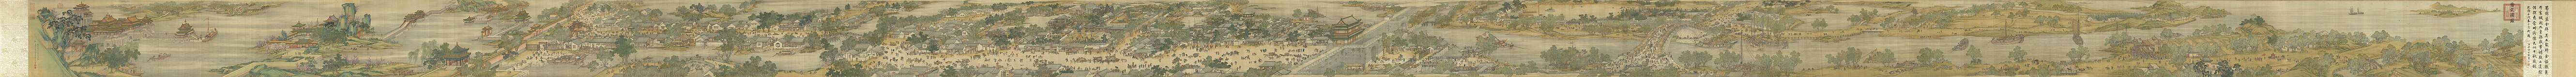 Langs de rivier tijdens het Qingmingfestival, geproduceerd door vijf schilders van de schildersacademie binnen het hof van de Qing. In het museum bevindt zich een tot animatie bewerkte versie van het schilderij, die op groot formaat wordt geprojecteerd.